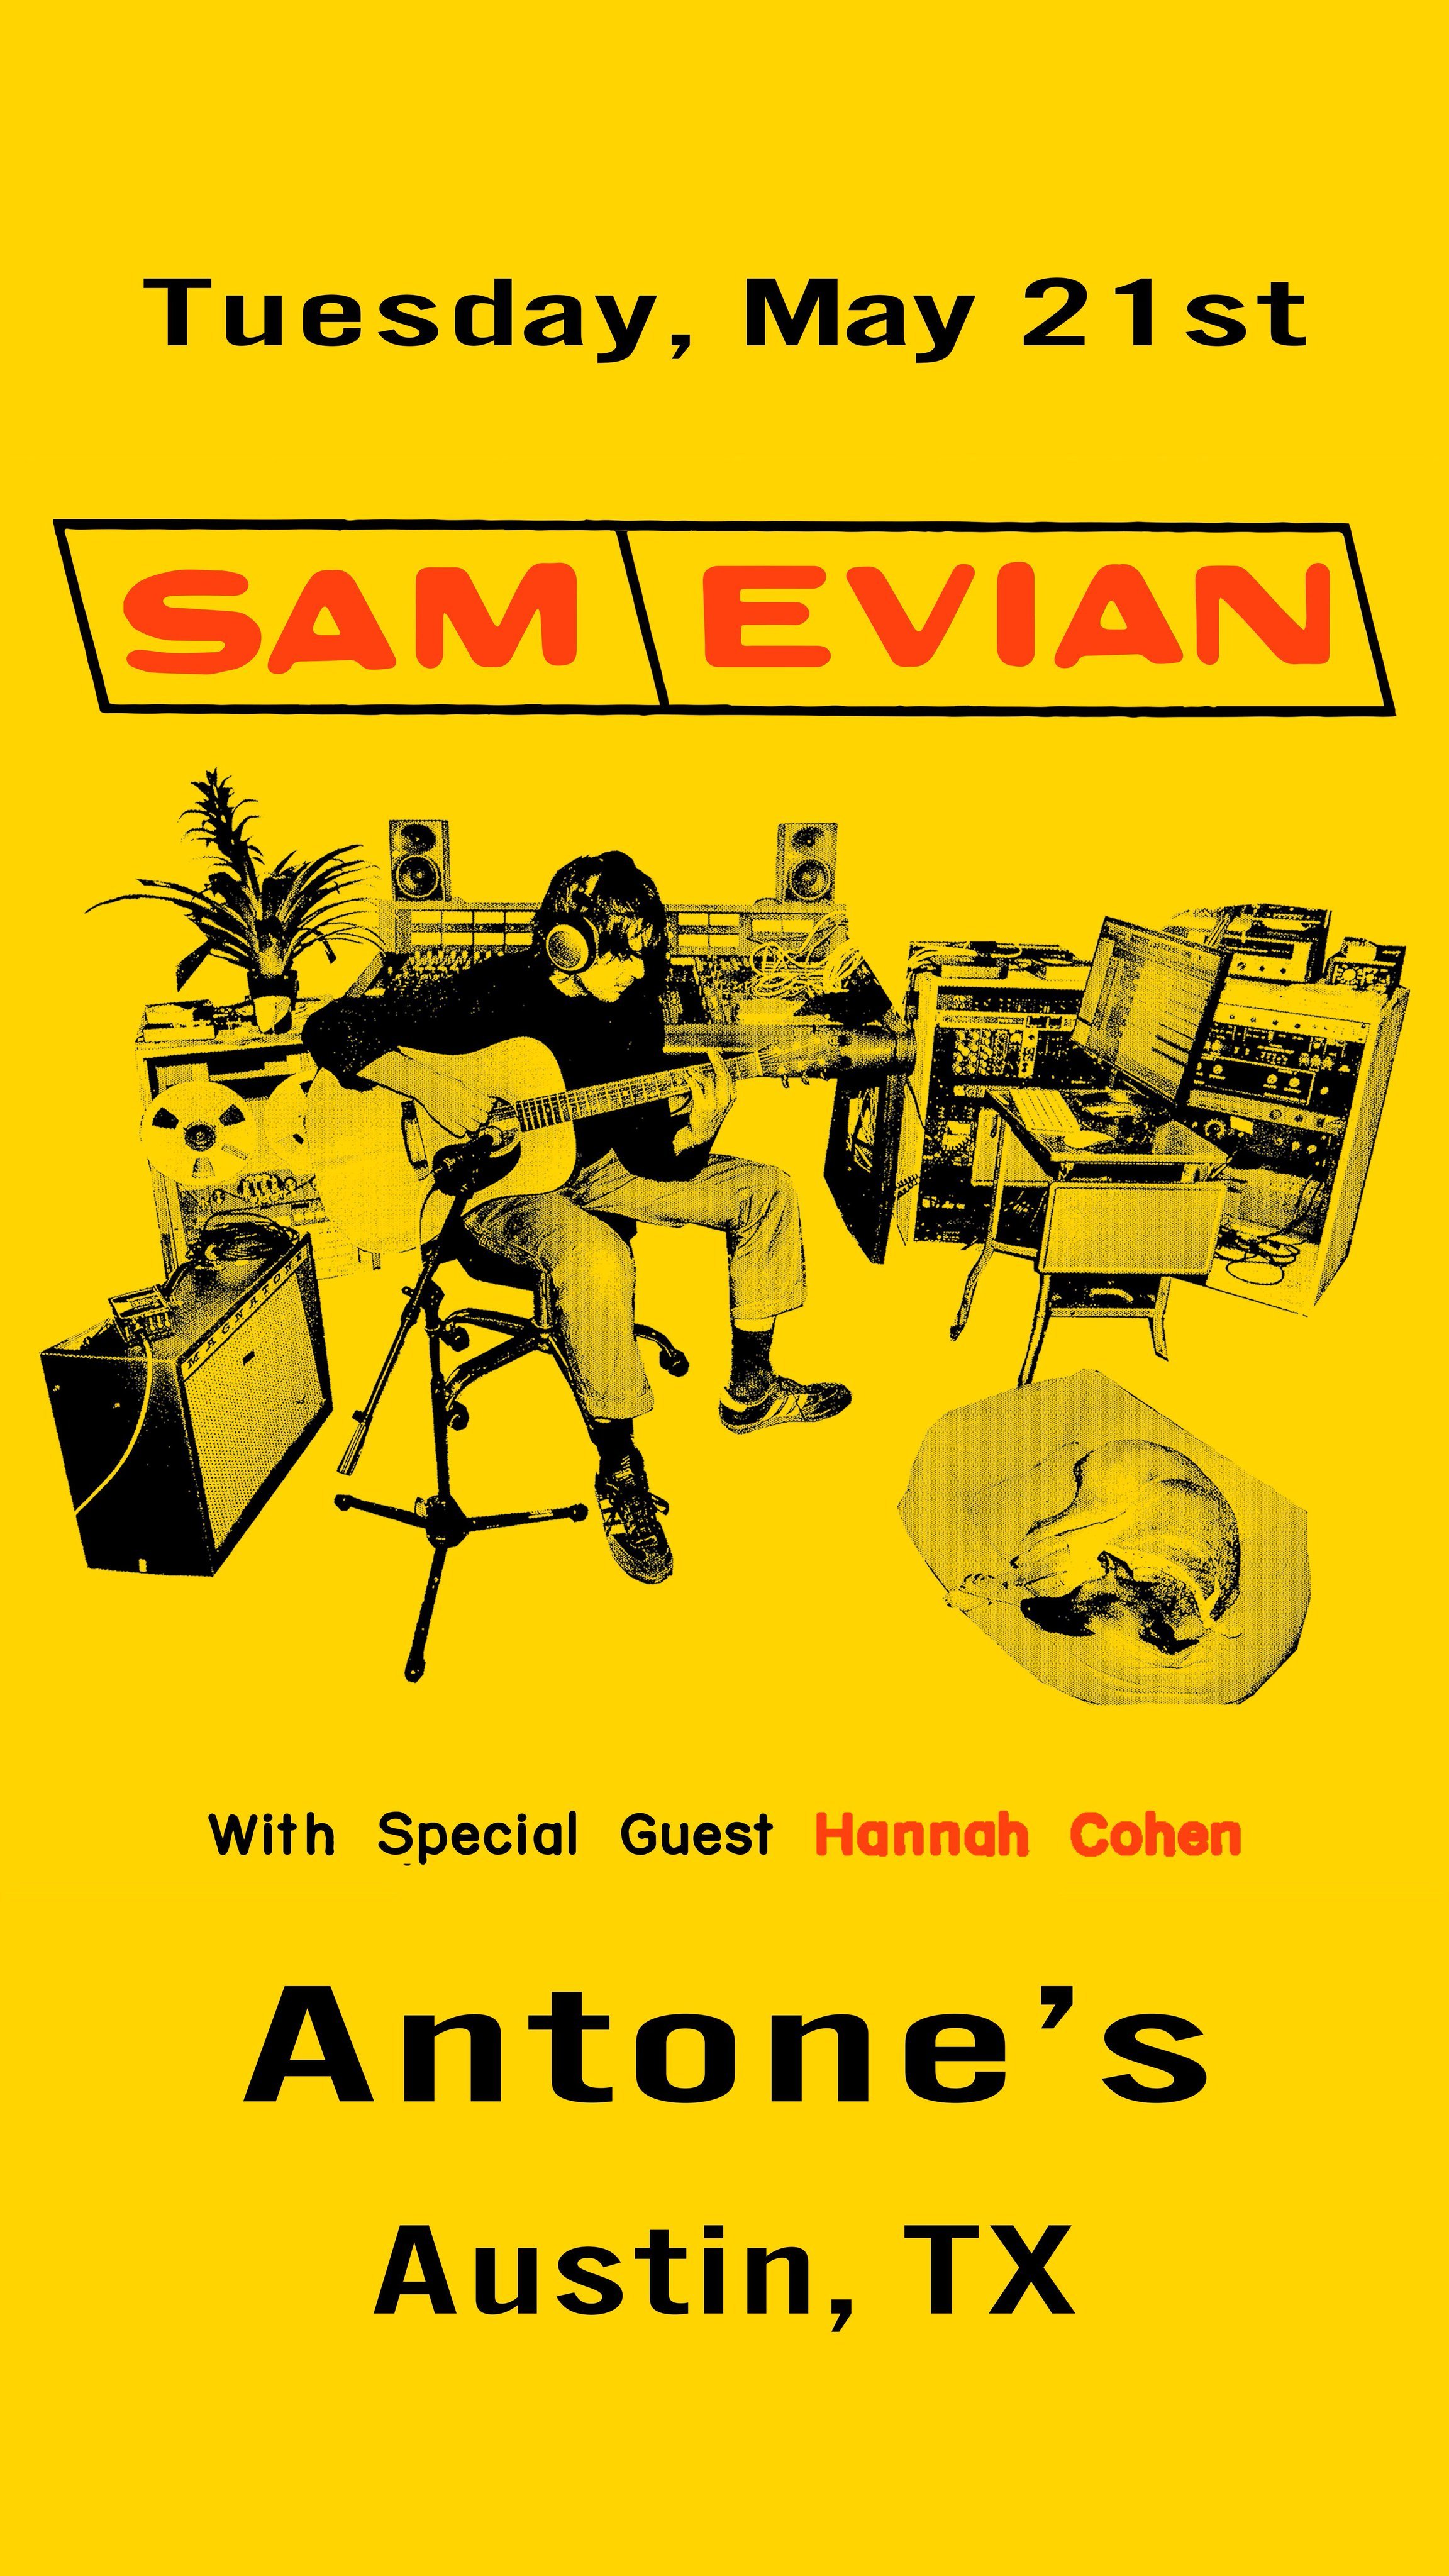 Sam Evian